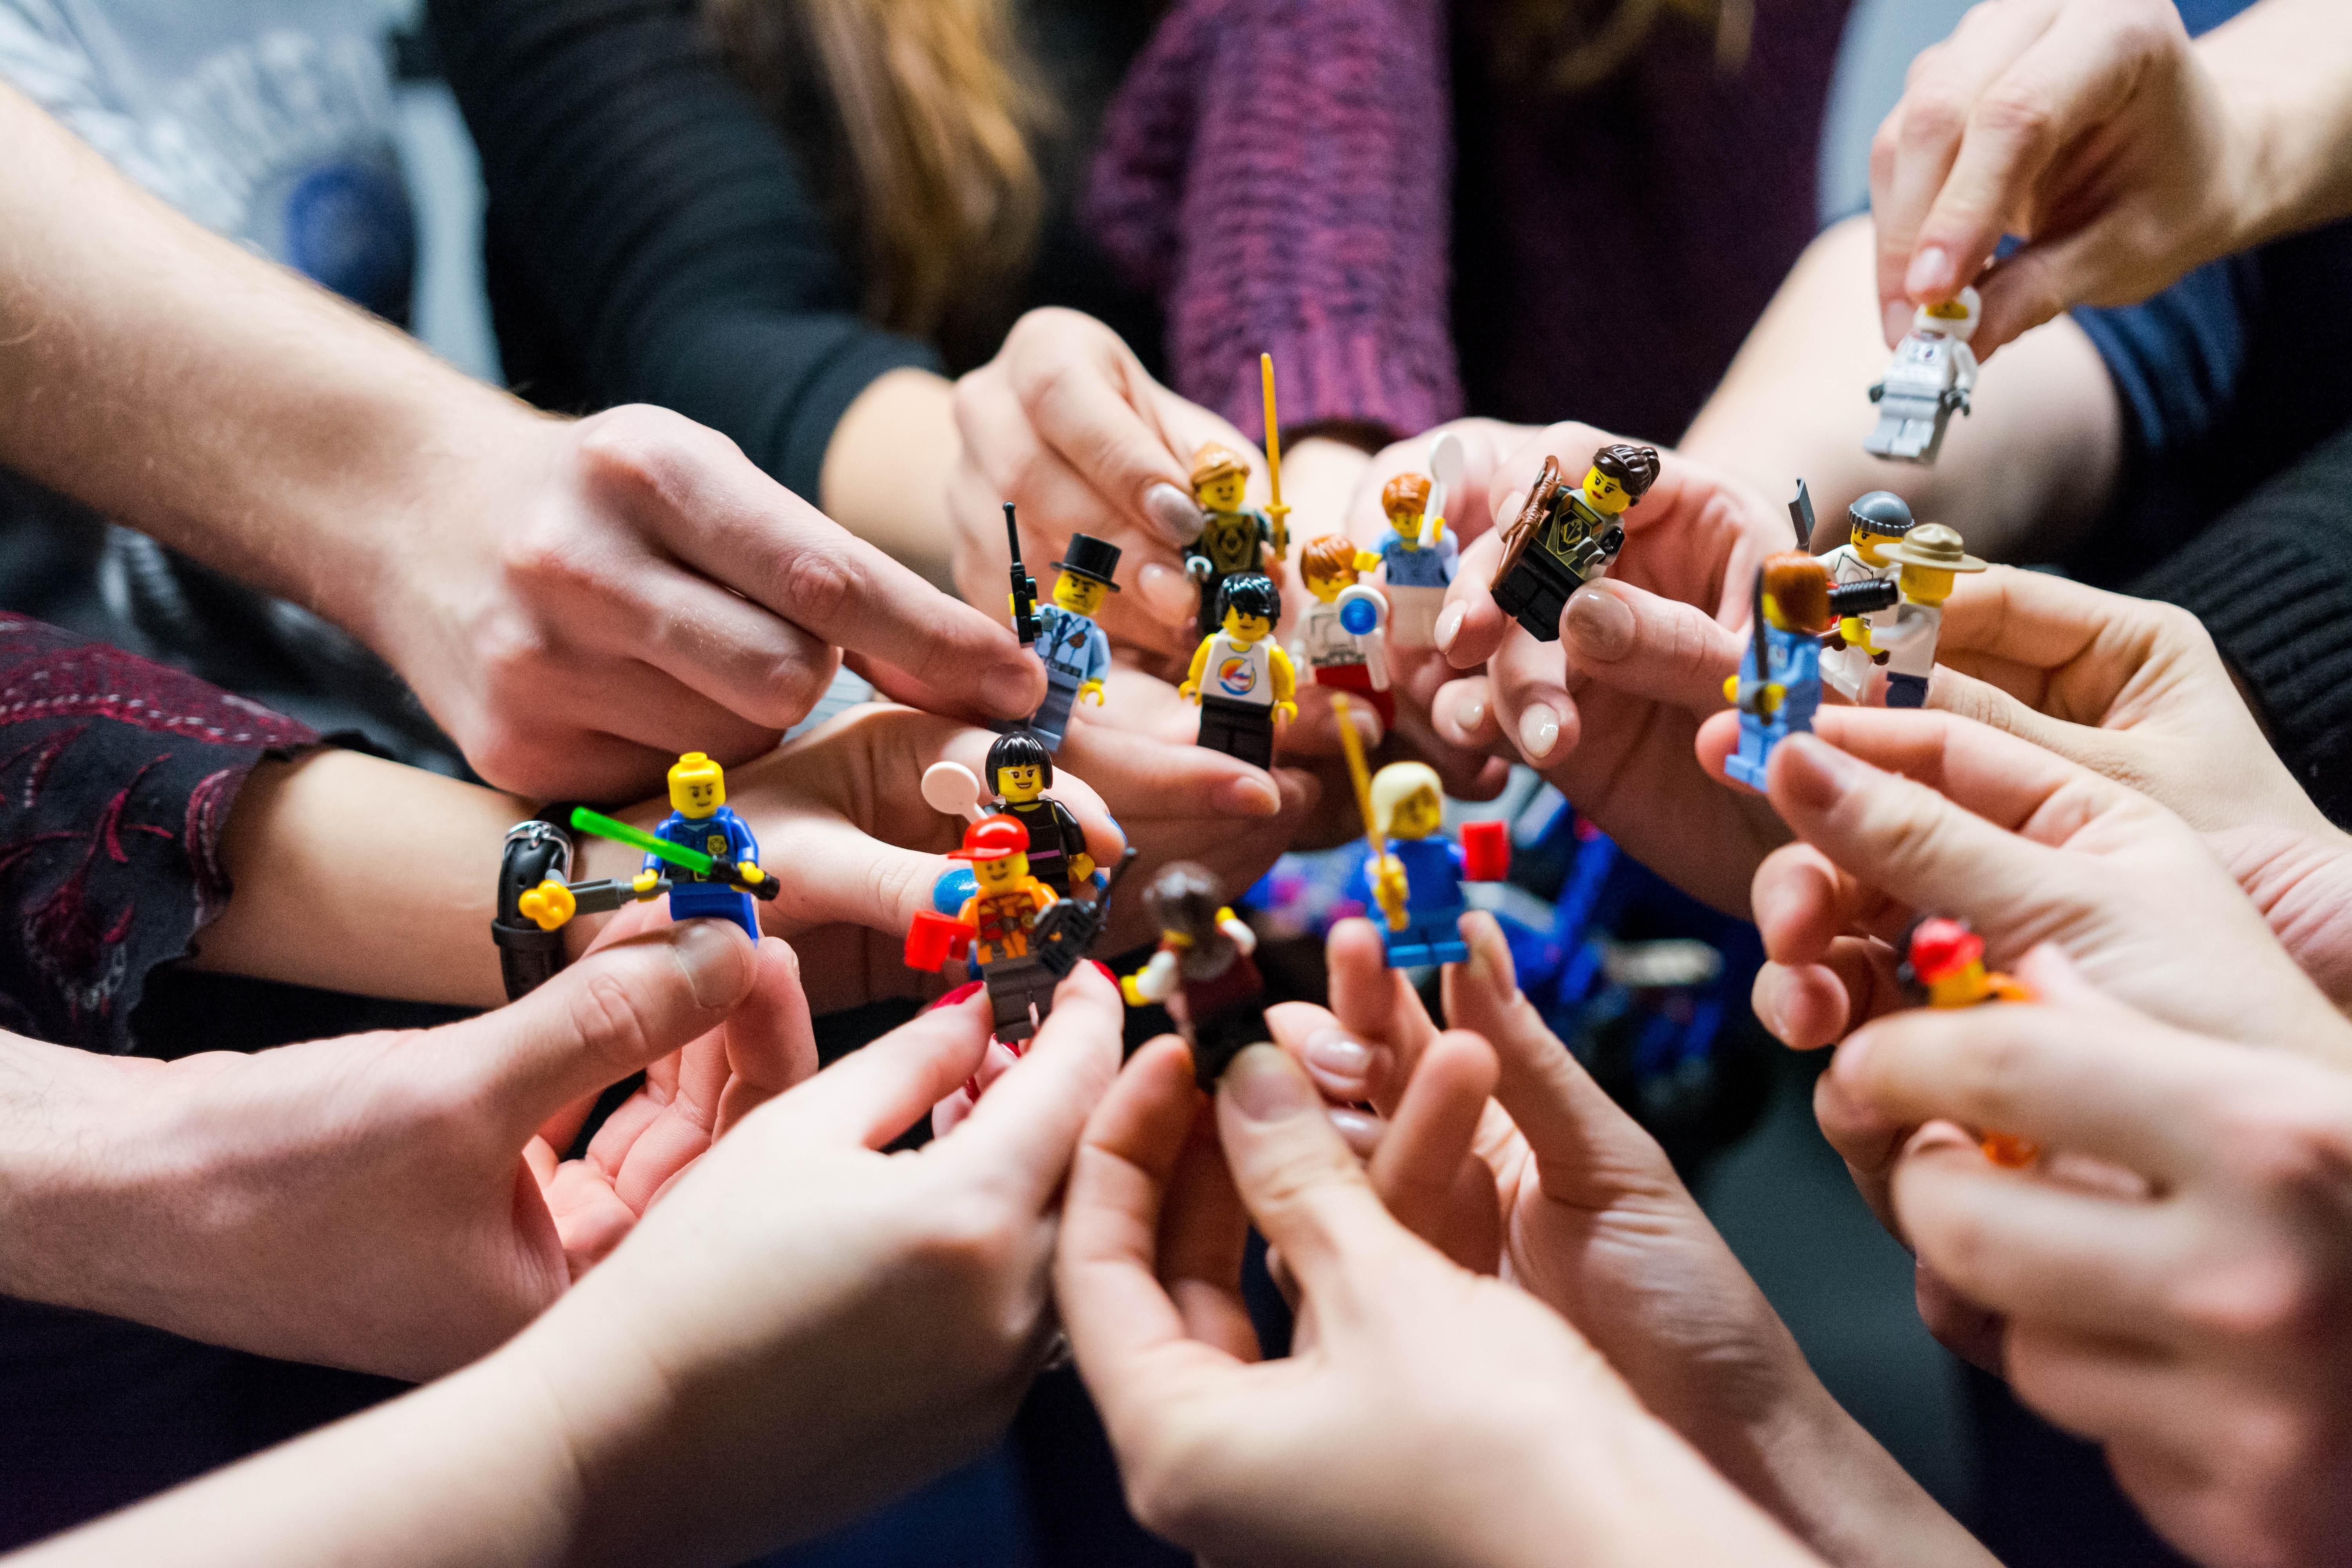 Plástico moldado sob pressão: entenda a tecnologia por trás do Lego -  29/11/2018 - UOL TILT